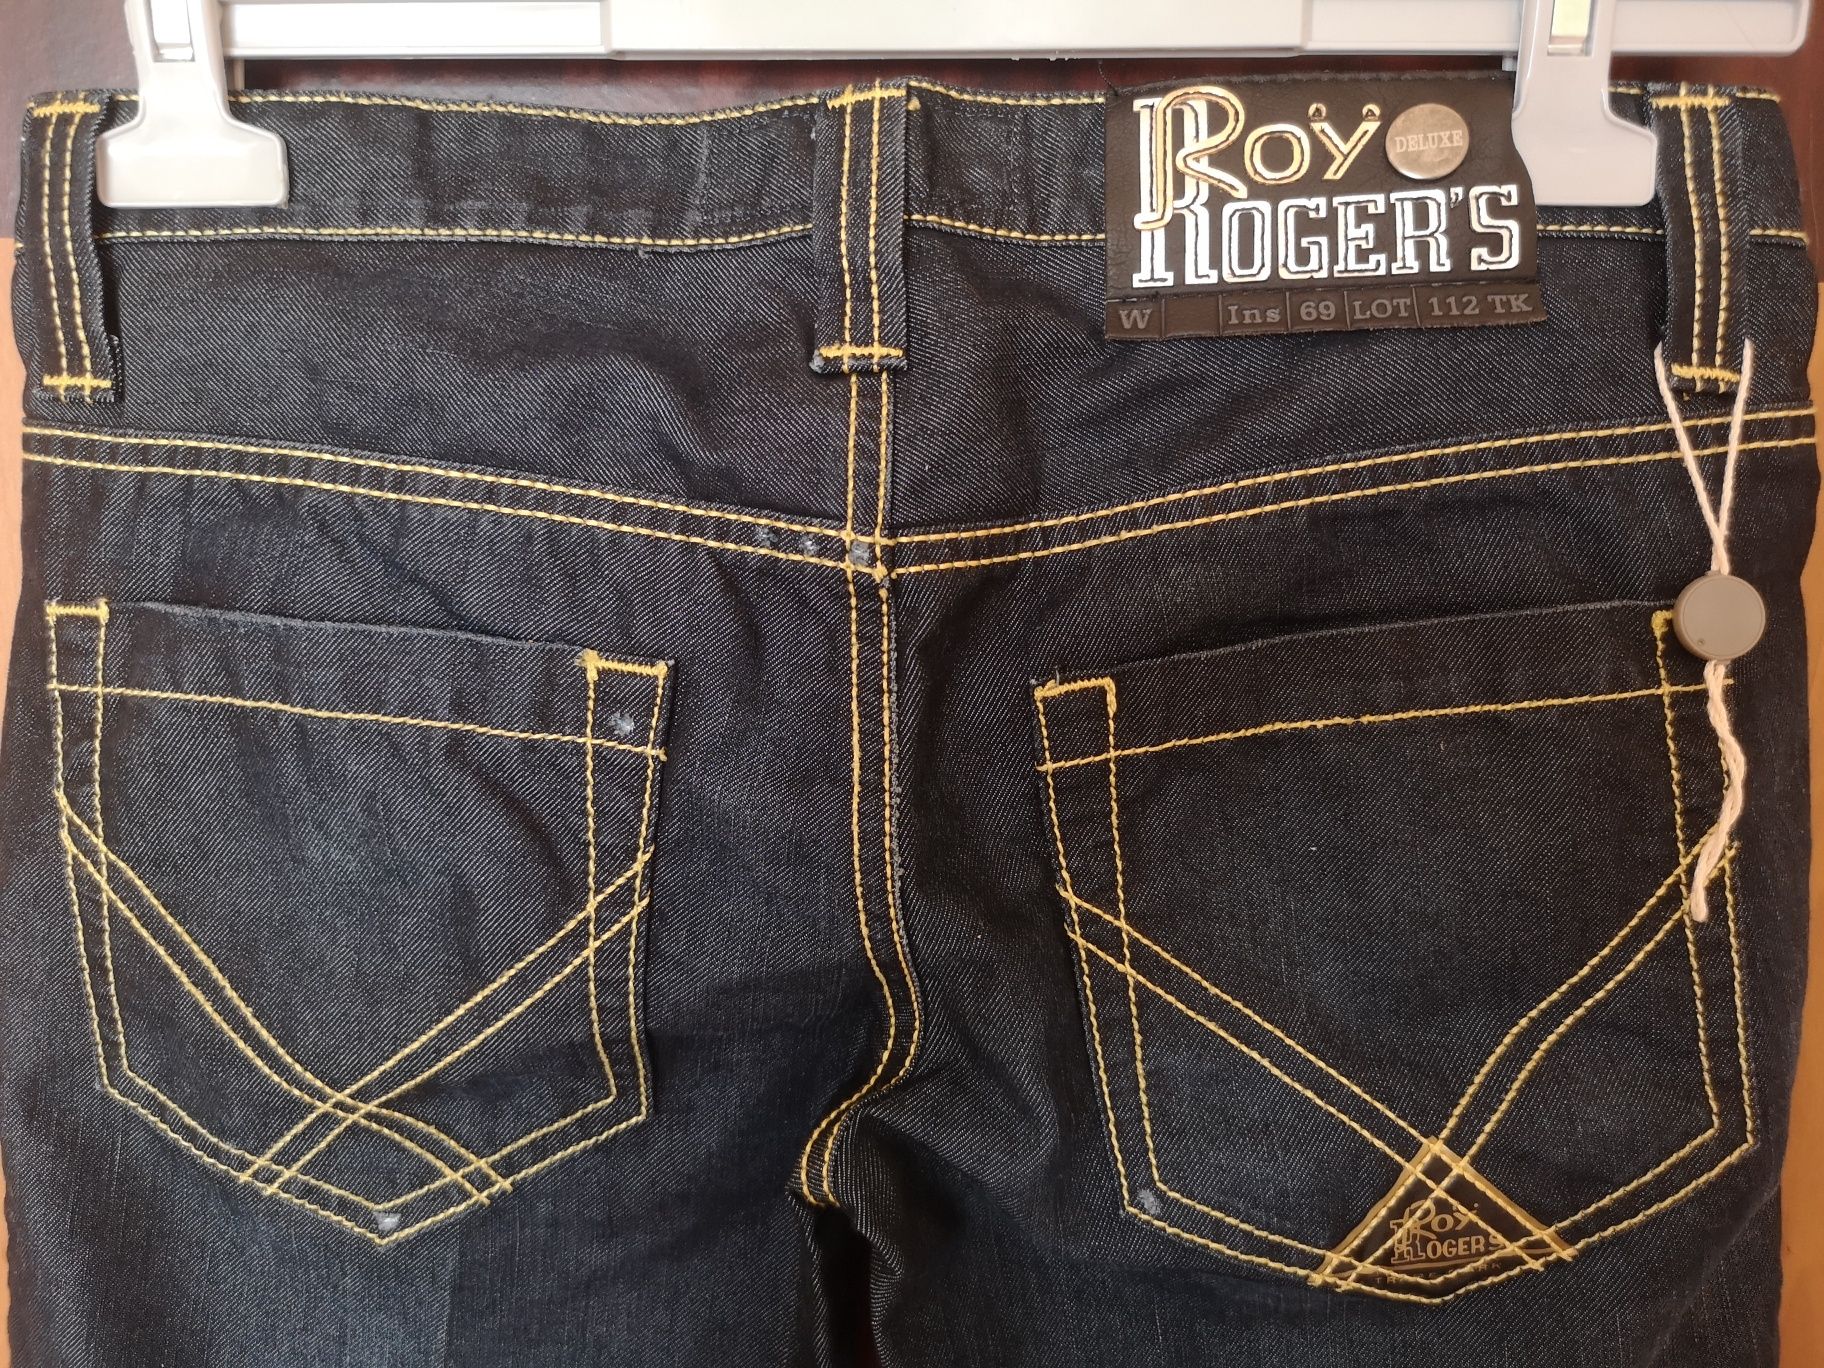 Нови дамски панталони Reply, дънки Roy Roger's Deluxe